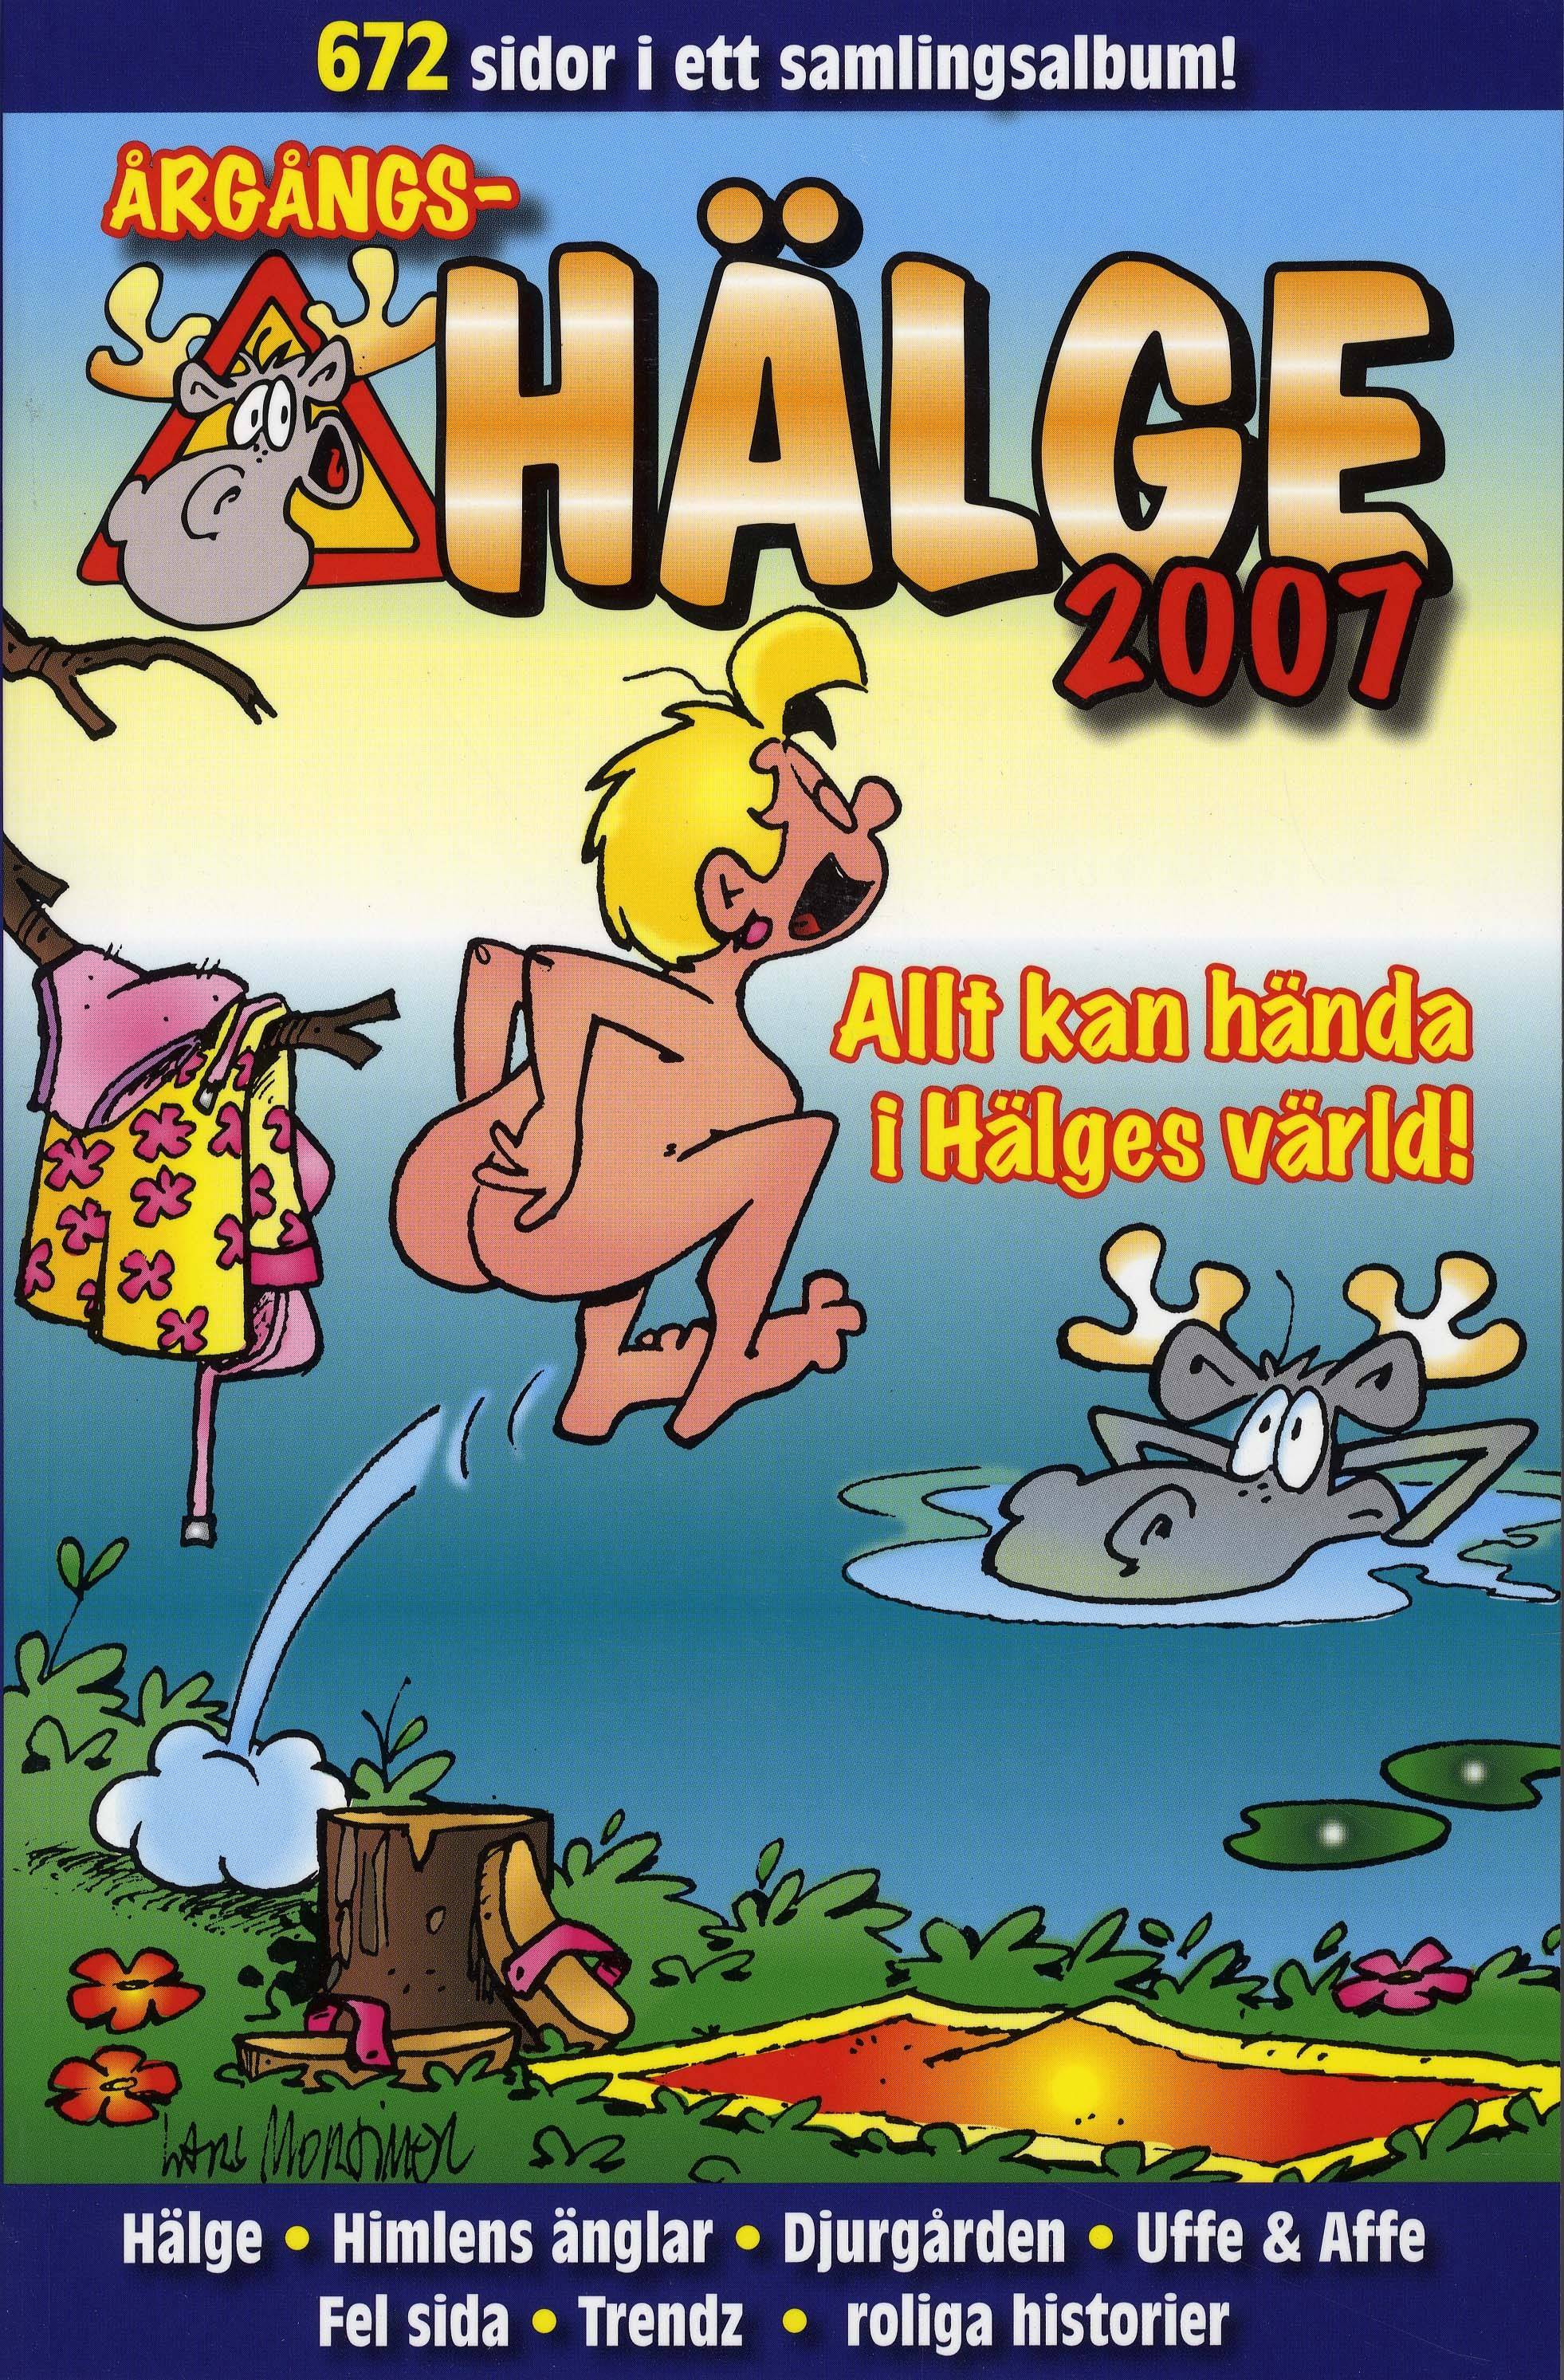 Årgångs-Hälge 2007